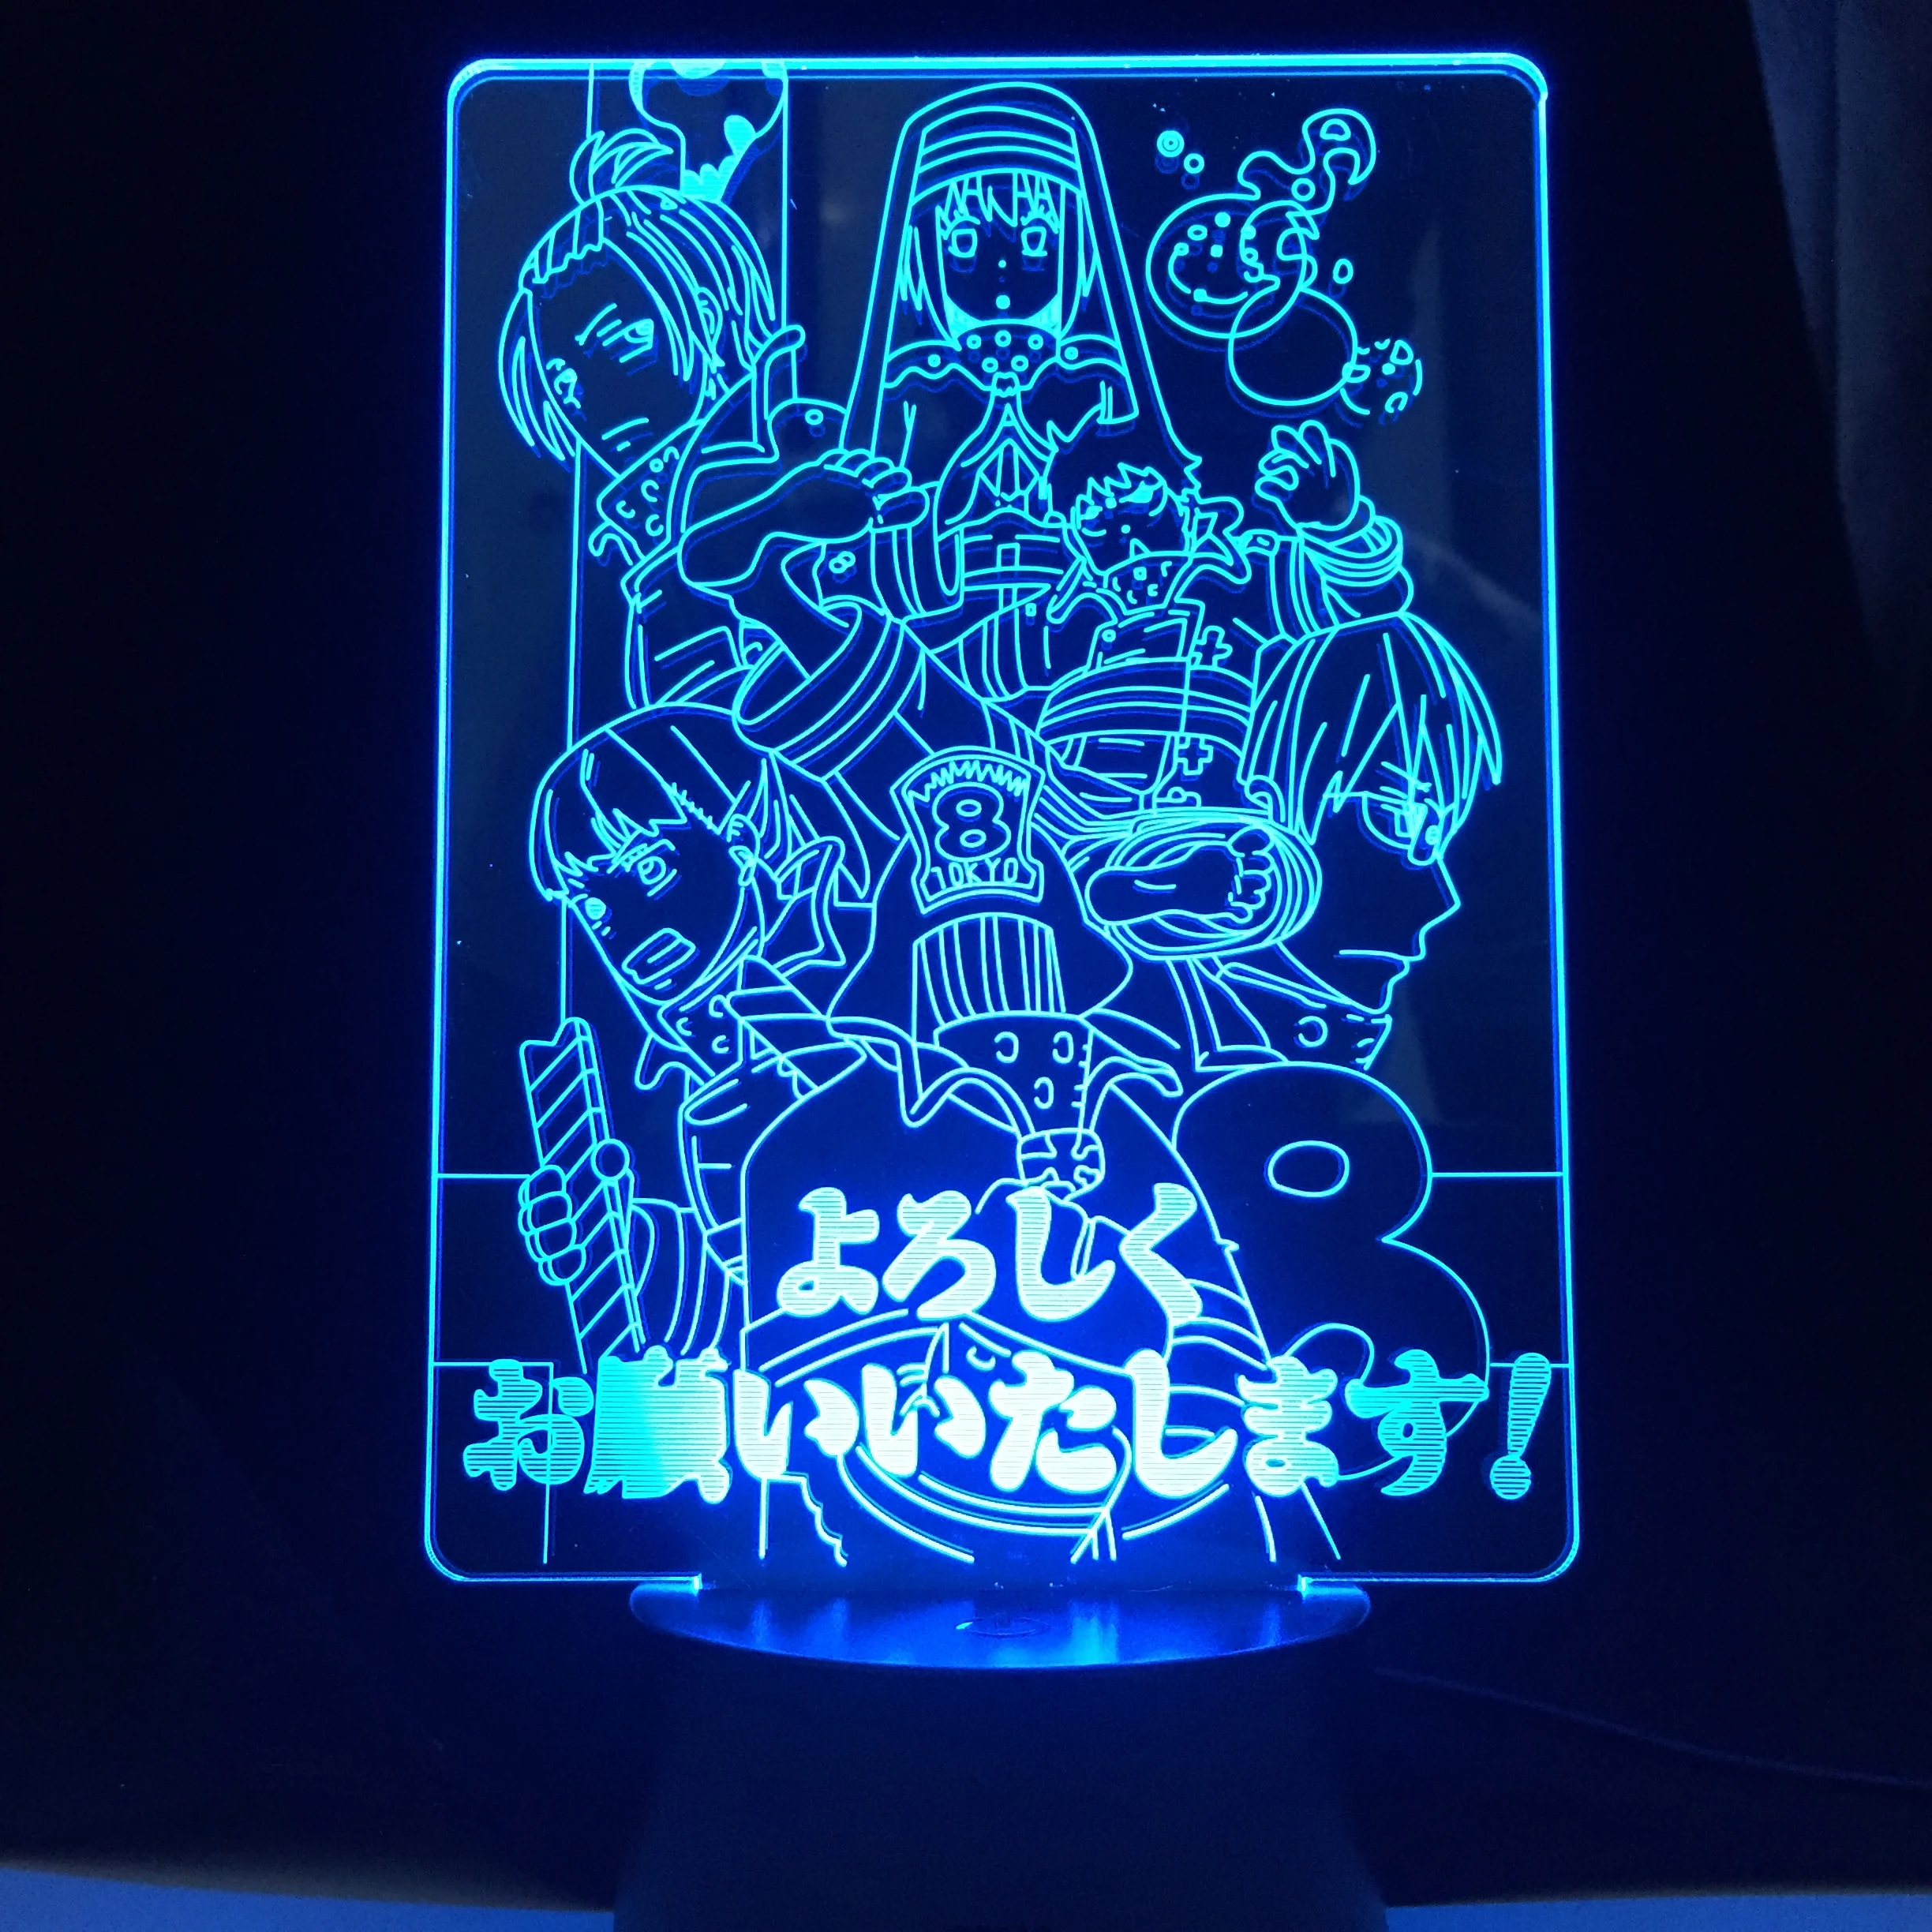 

Joker Anime Lamp Fire Force Design Japanese Cartoon Lamp for Home Decor Birthday Gift Manga LED Night Lamp 3d Light Dropshipping